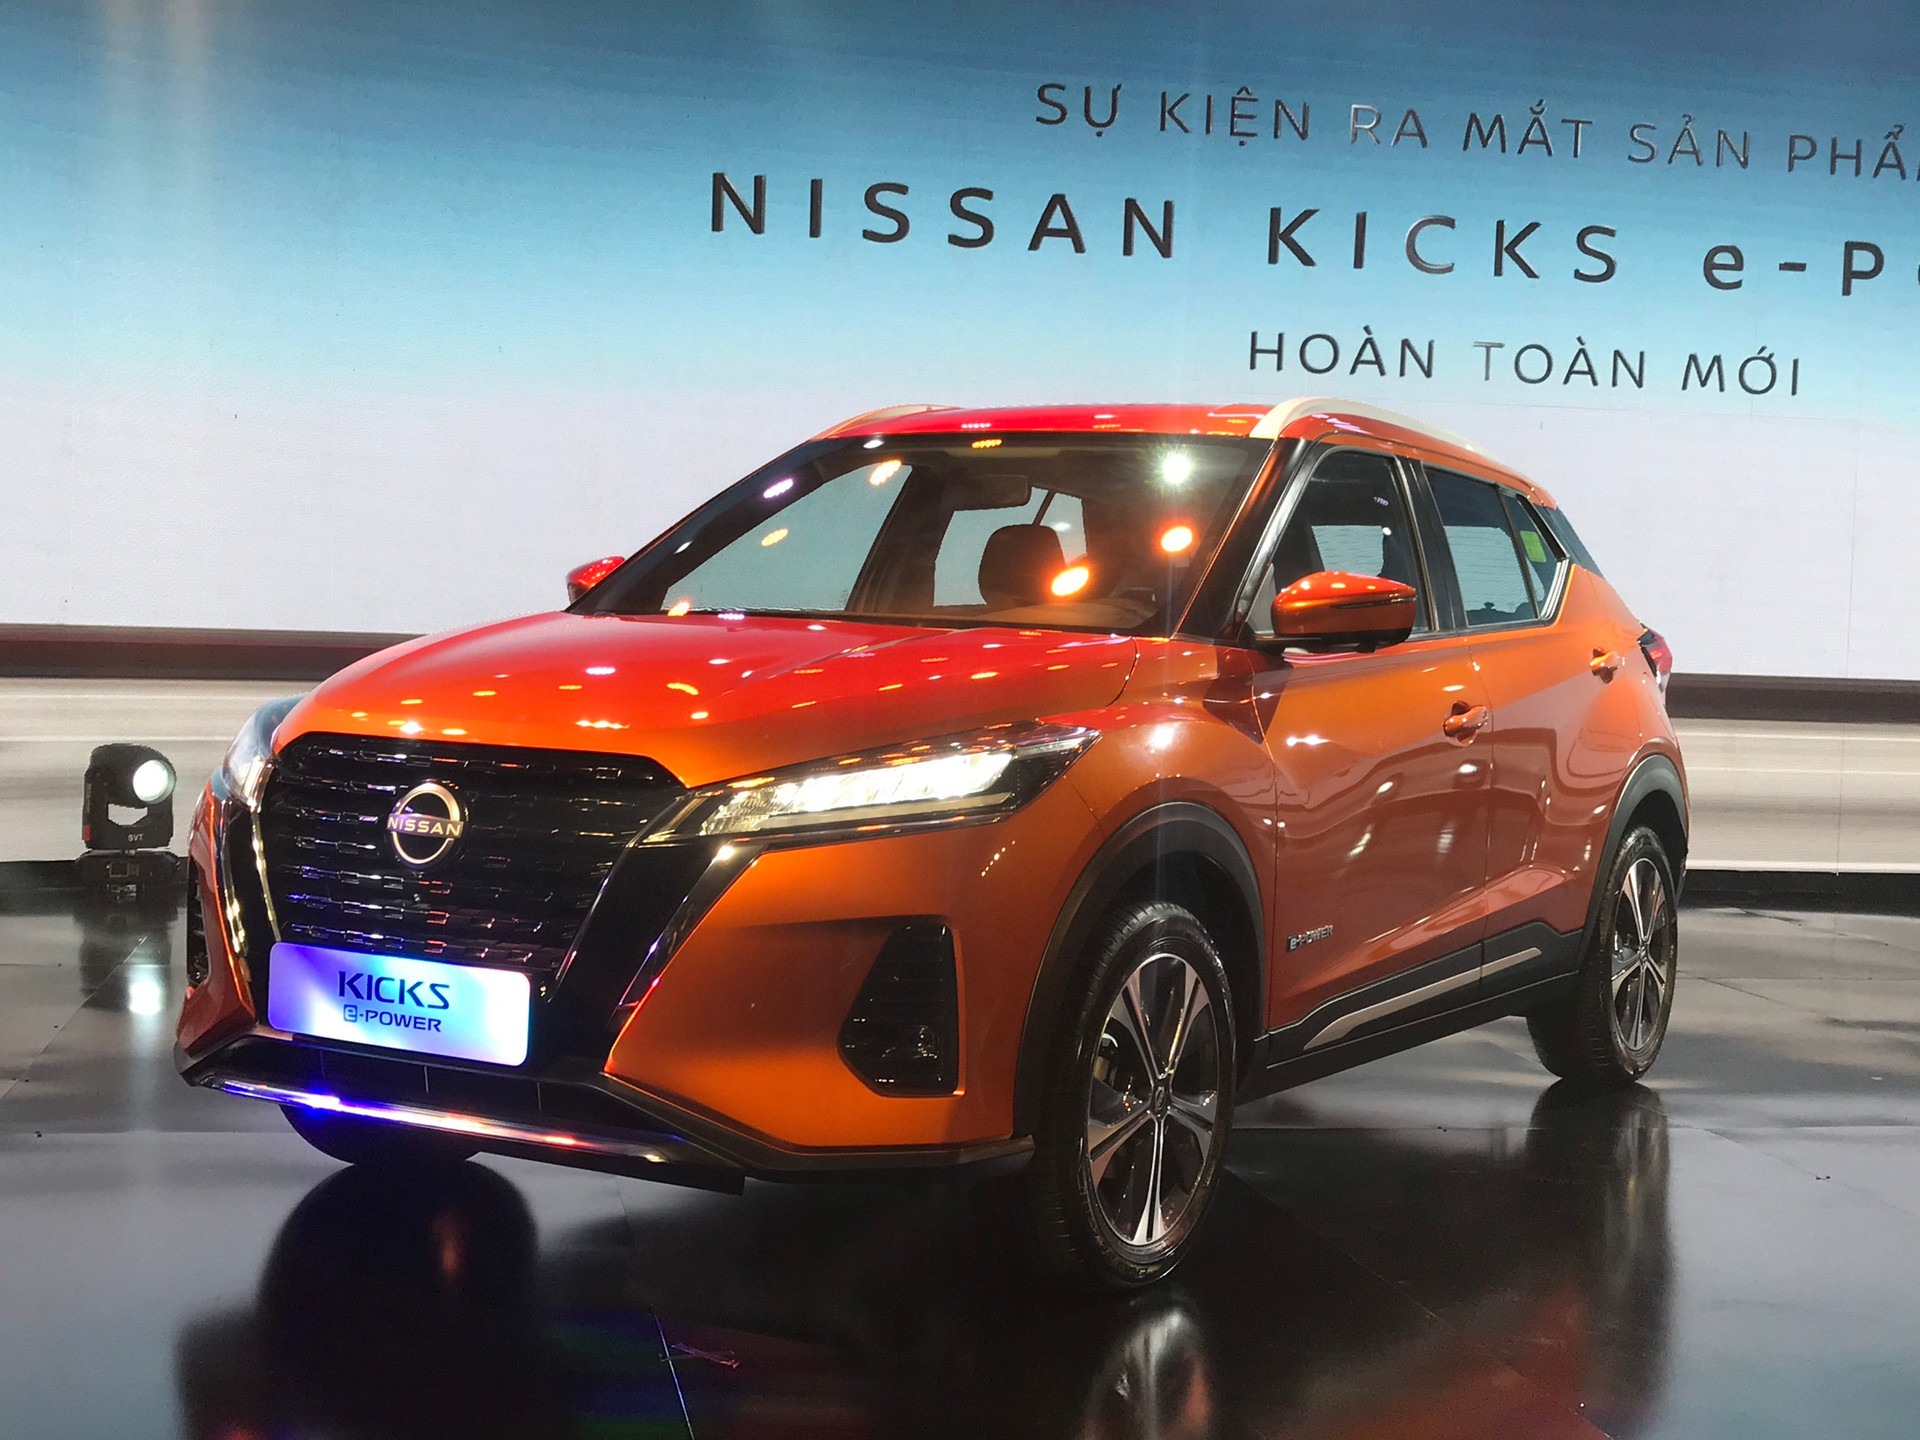 Nissan Kicks e-Power ra mắt thị trường Việt: Tiêu thụ xăng ít hơn Honda Lead, giá từ 789 triệu đồng